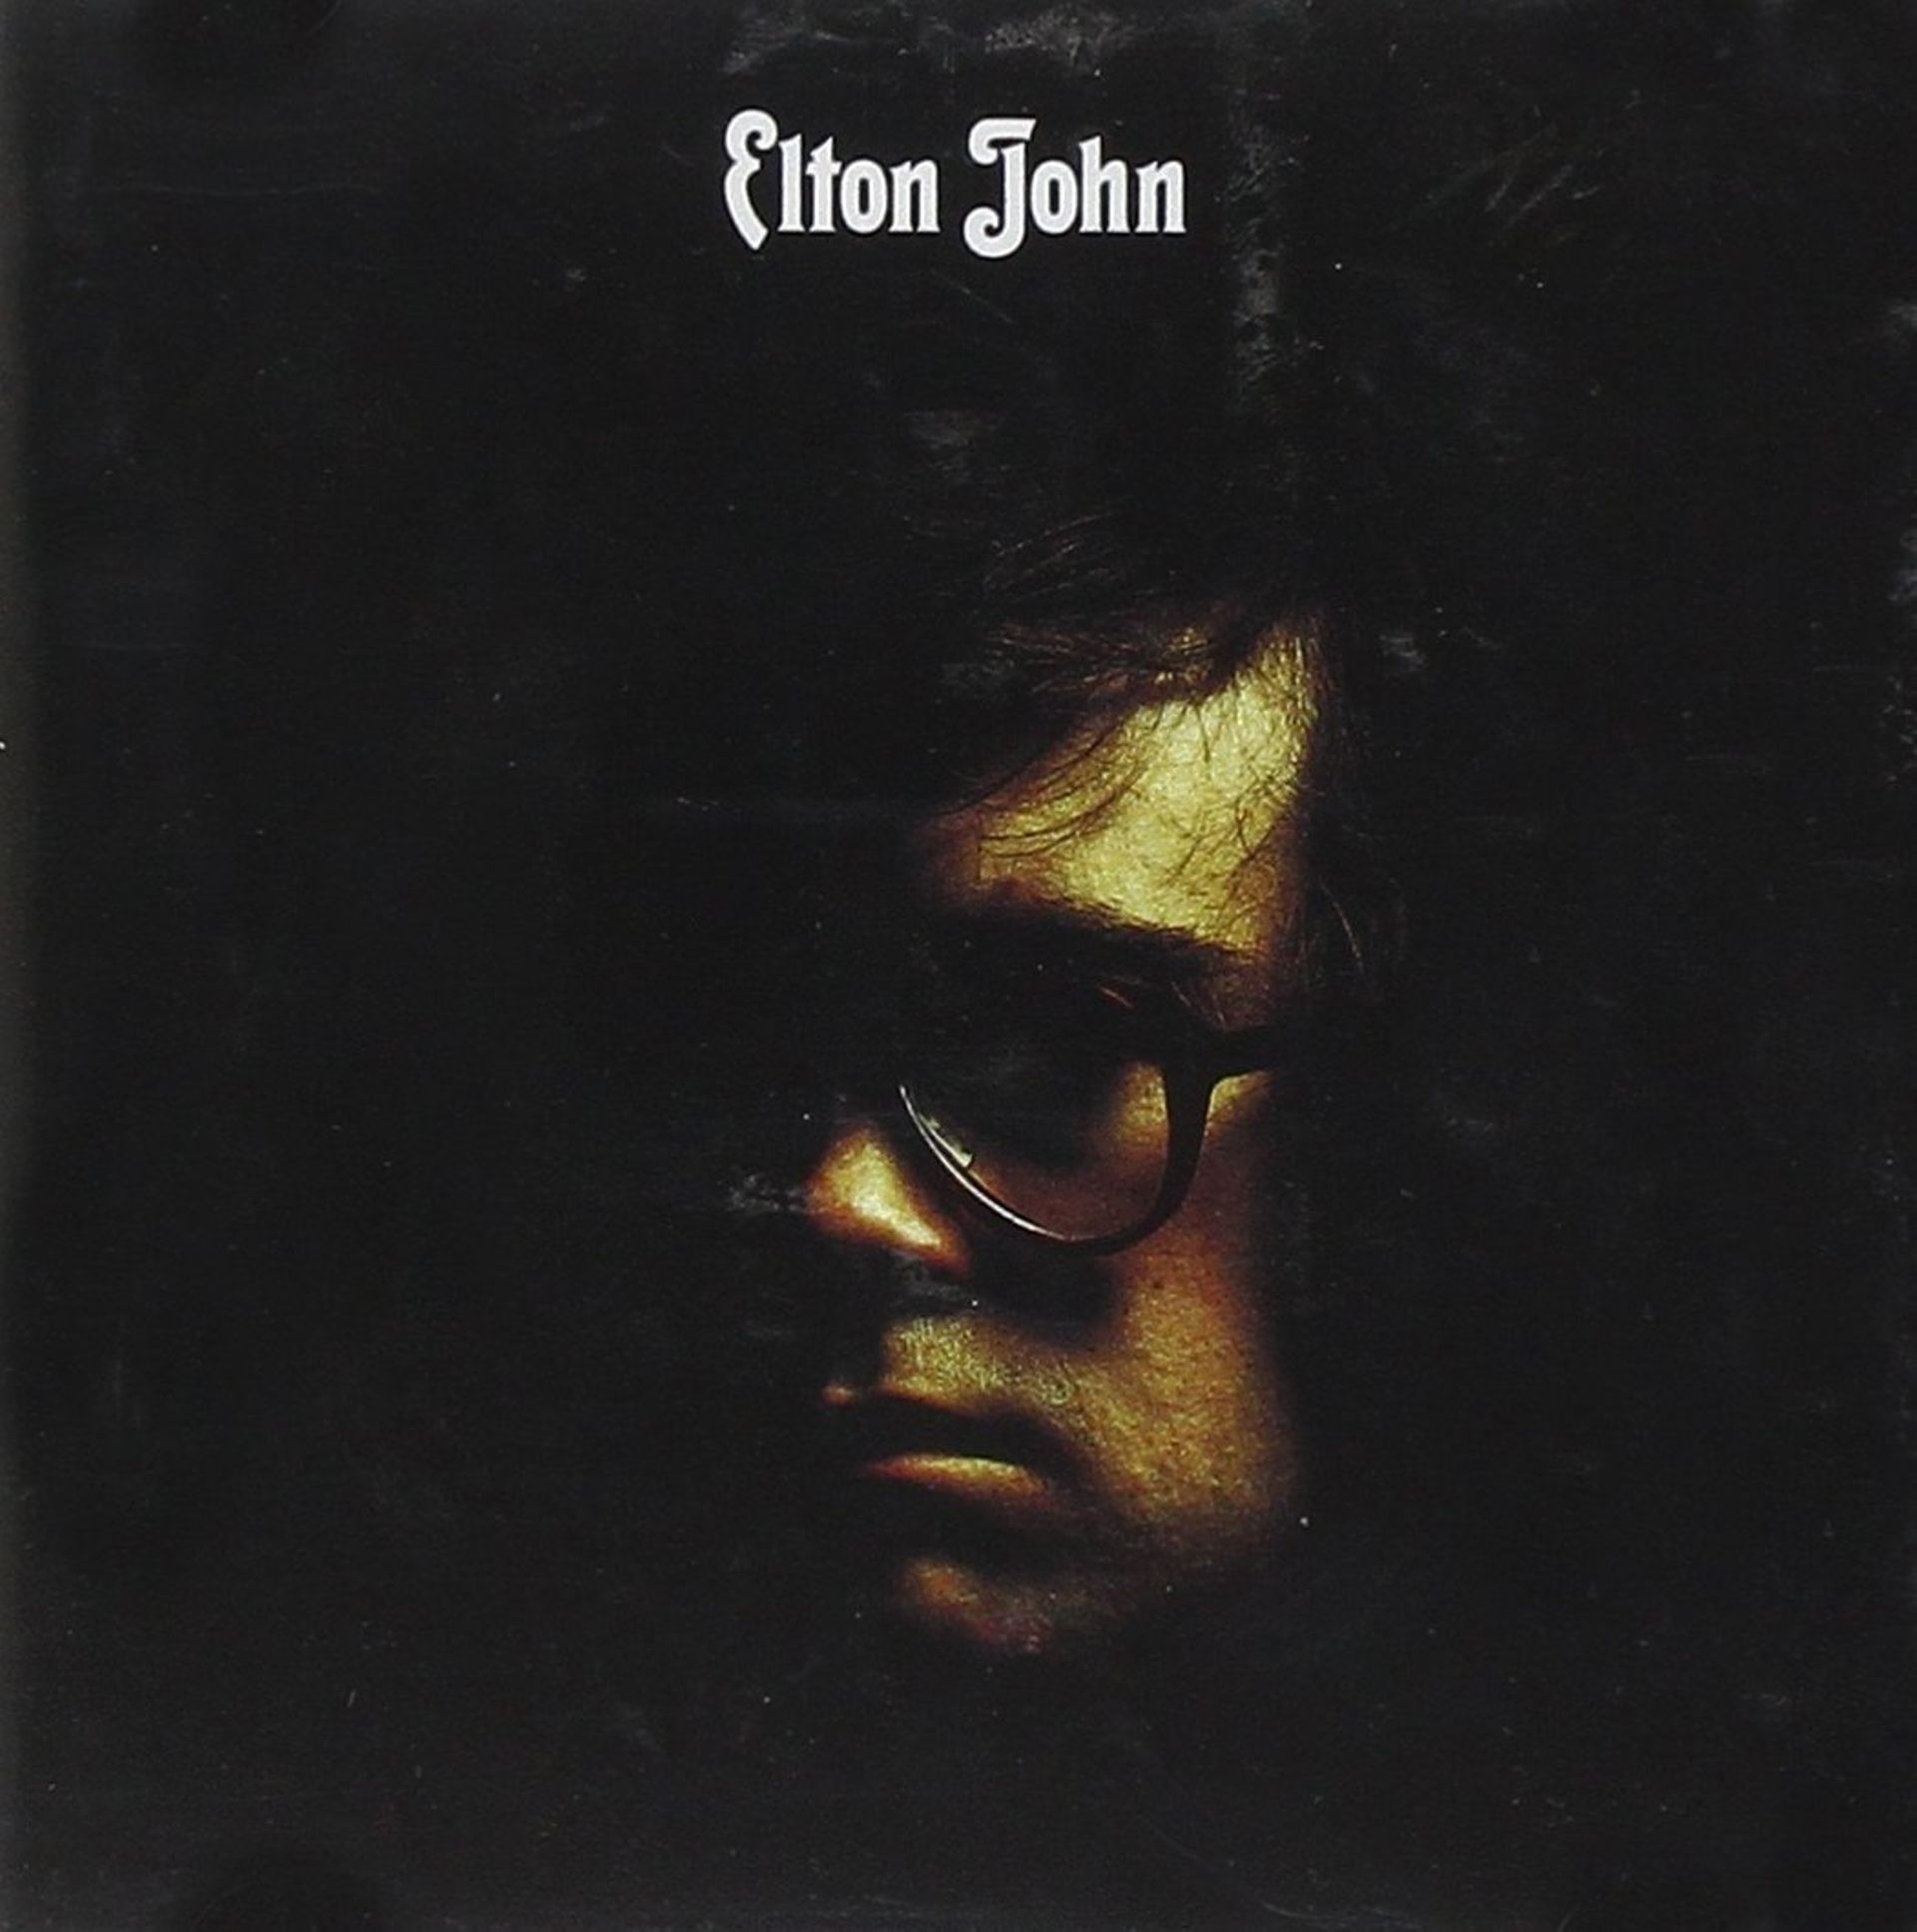 Elton John a 70 ans : retour sur 5 albums majeurs